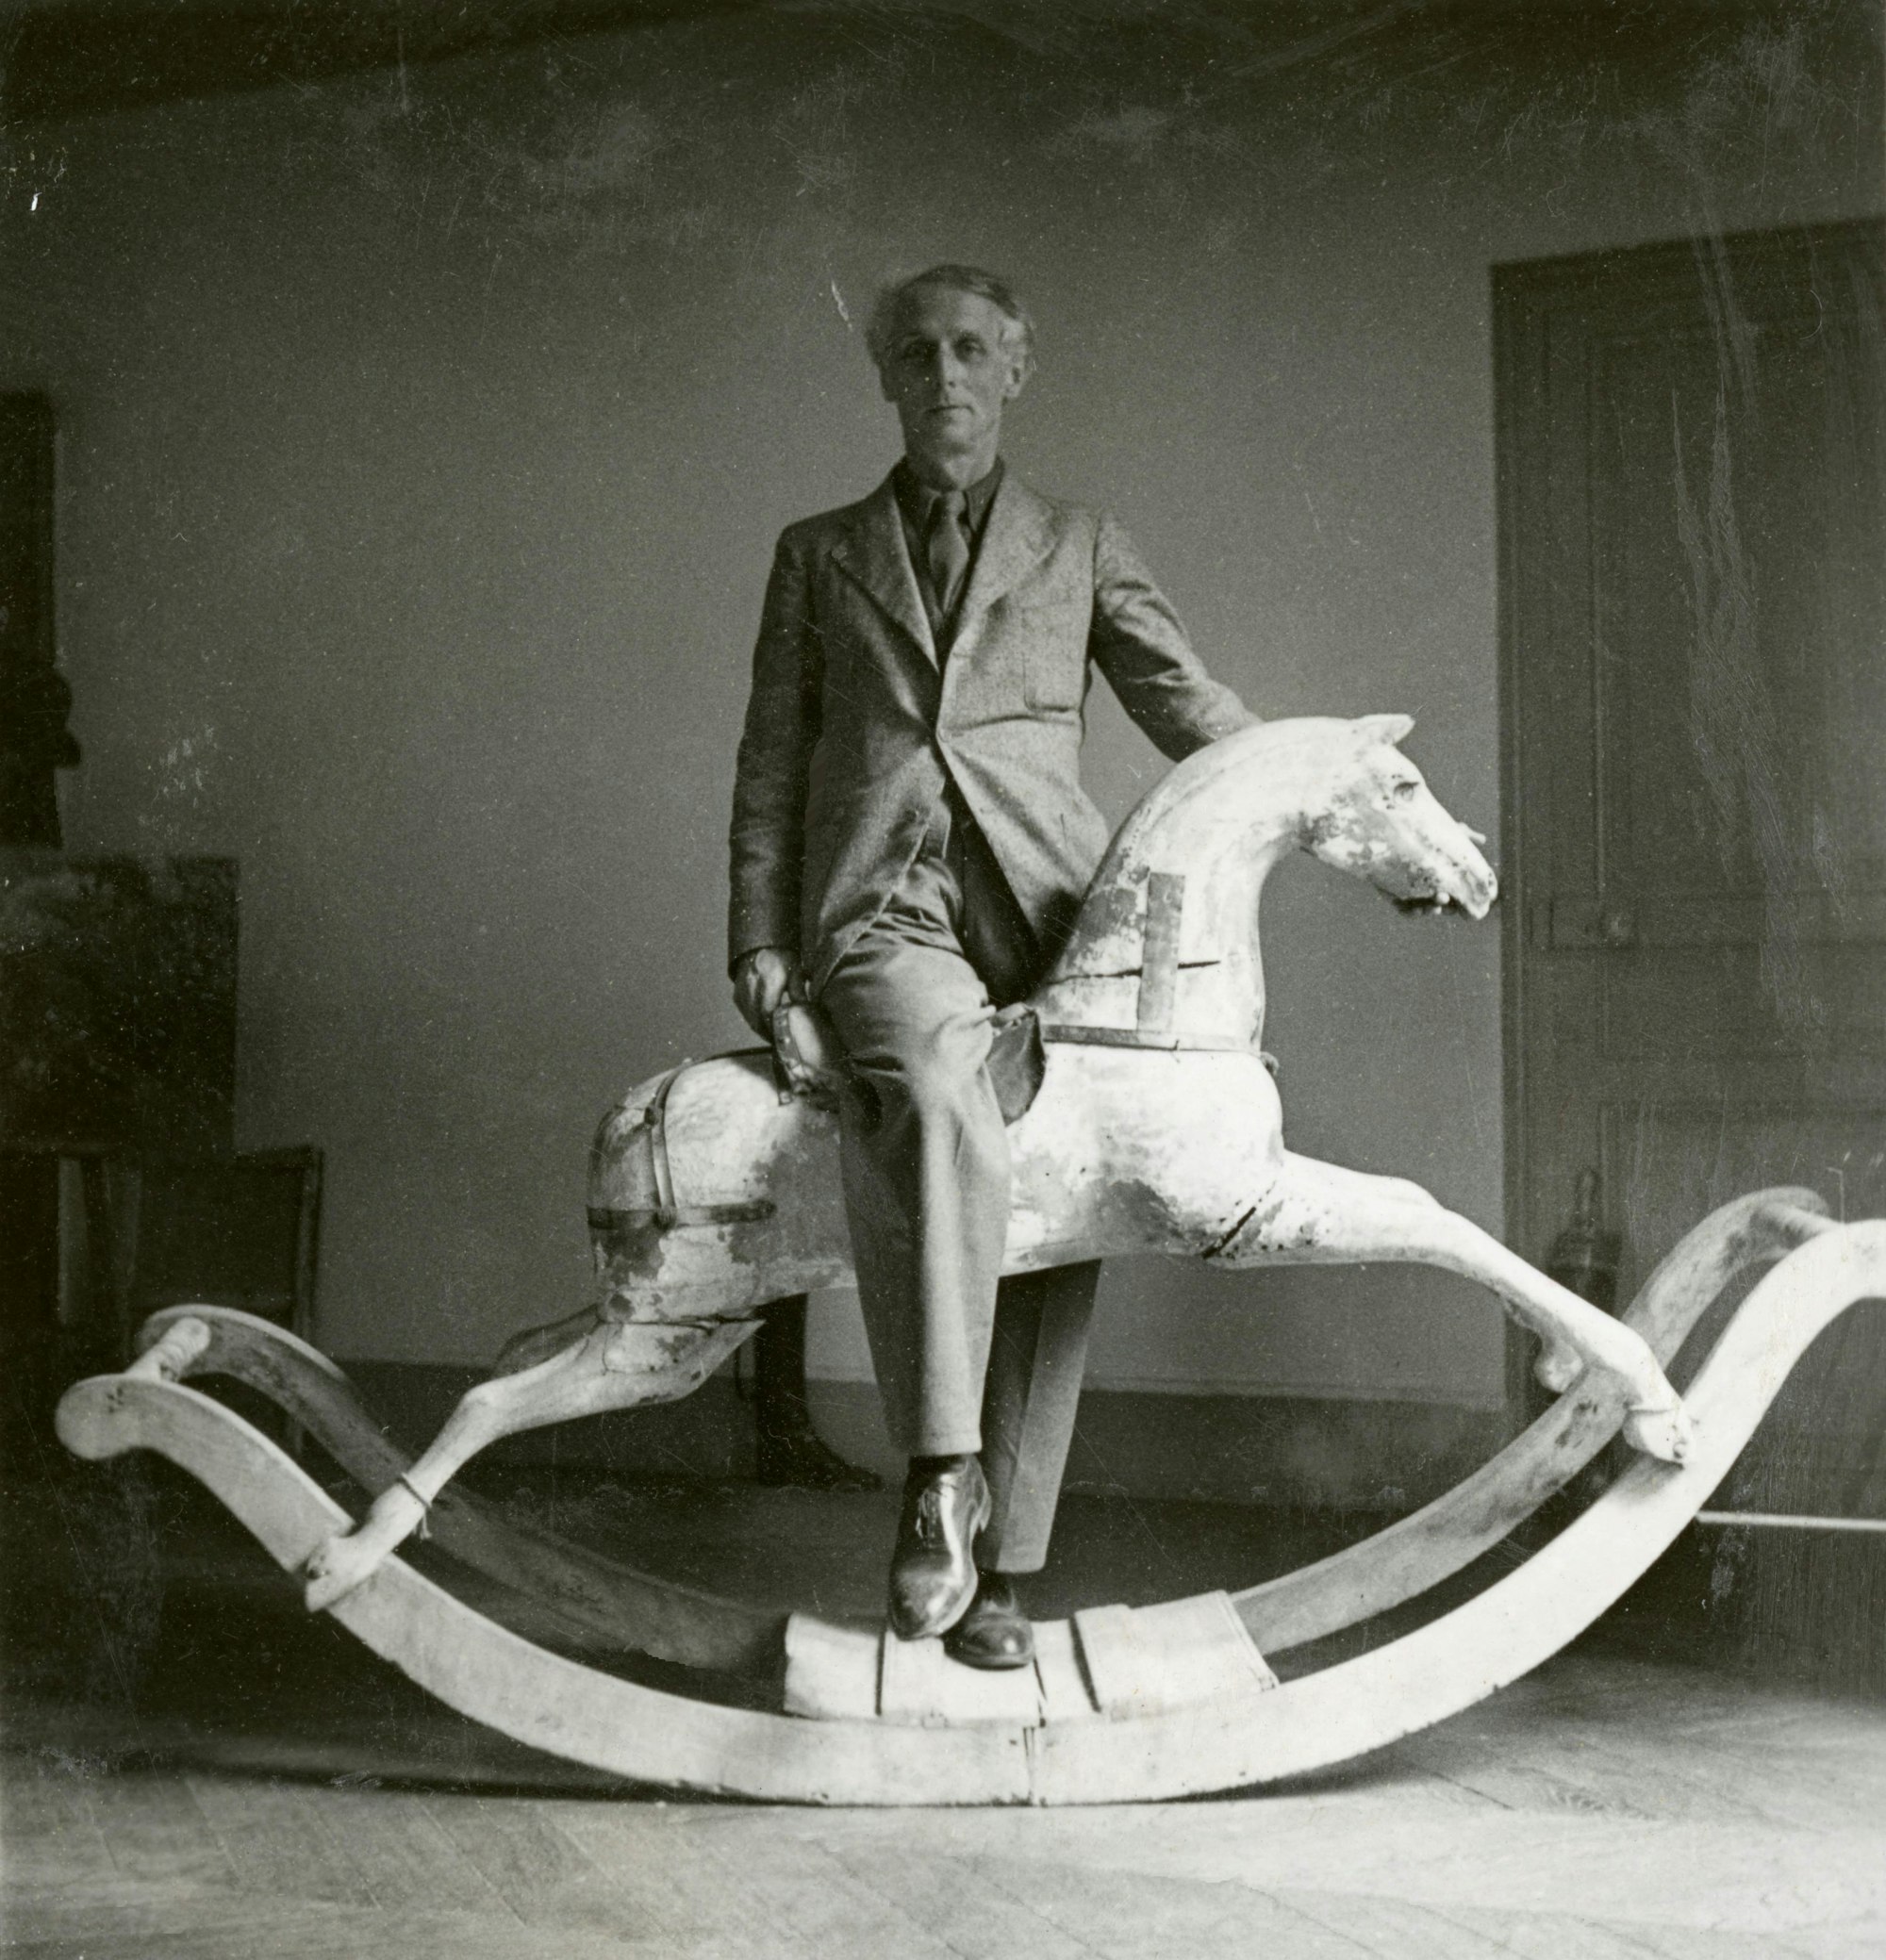 Der Surrealist Max Ernst blickt in die Kamera, ein Bein hat er quer über den Sattel eines Schaukelpferds gelegt.